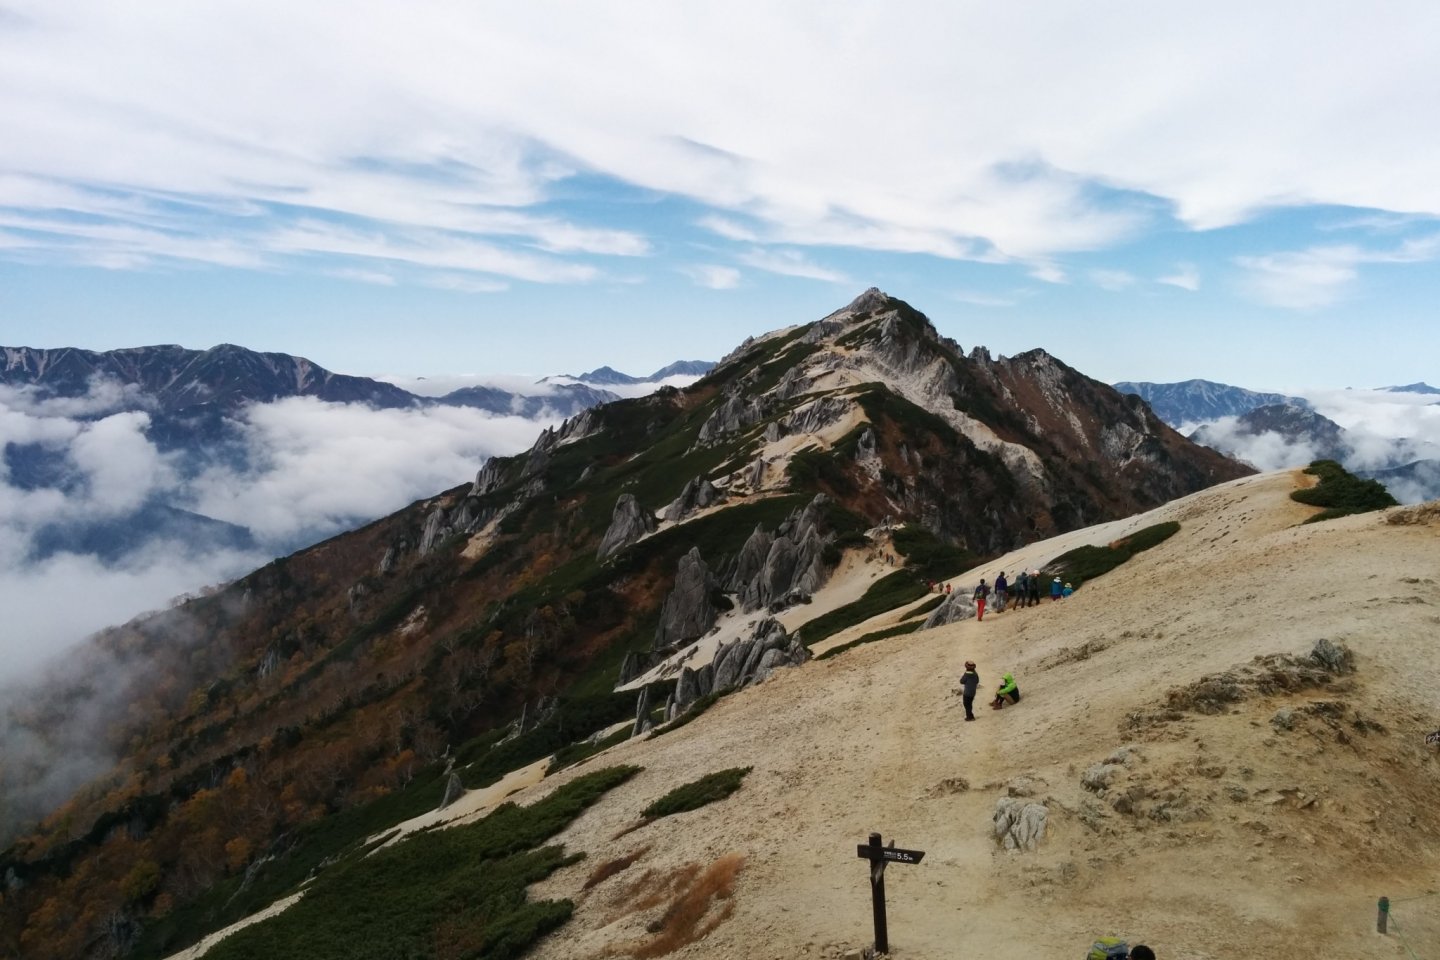 The peak of Mount Tsubakuro, from Enzanso